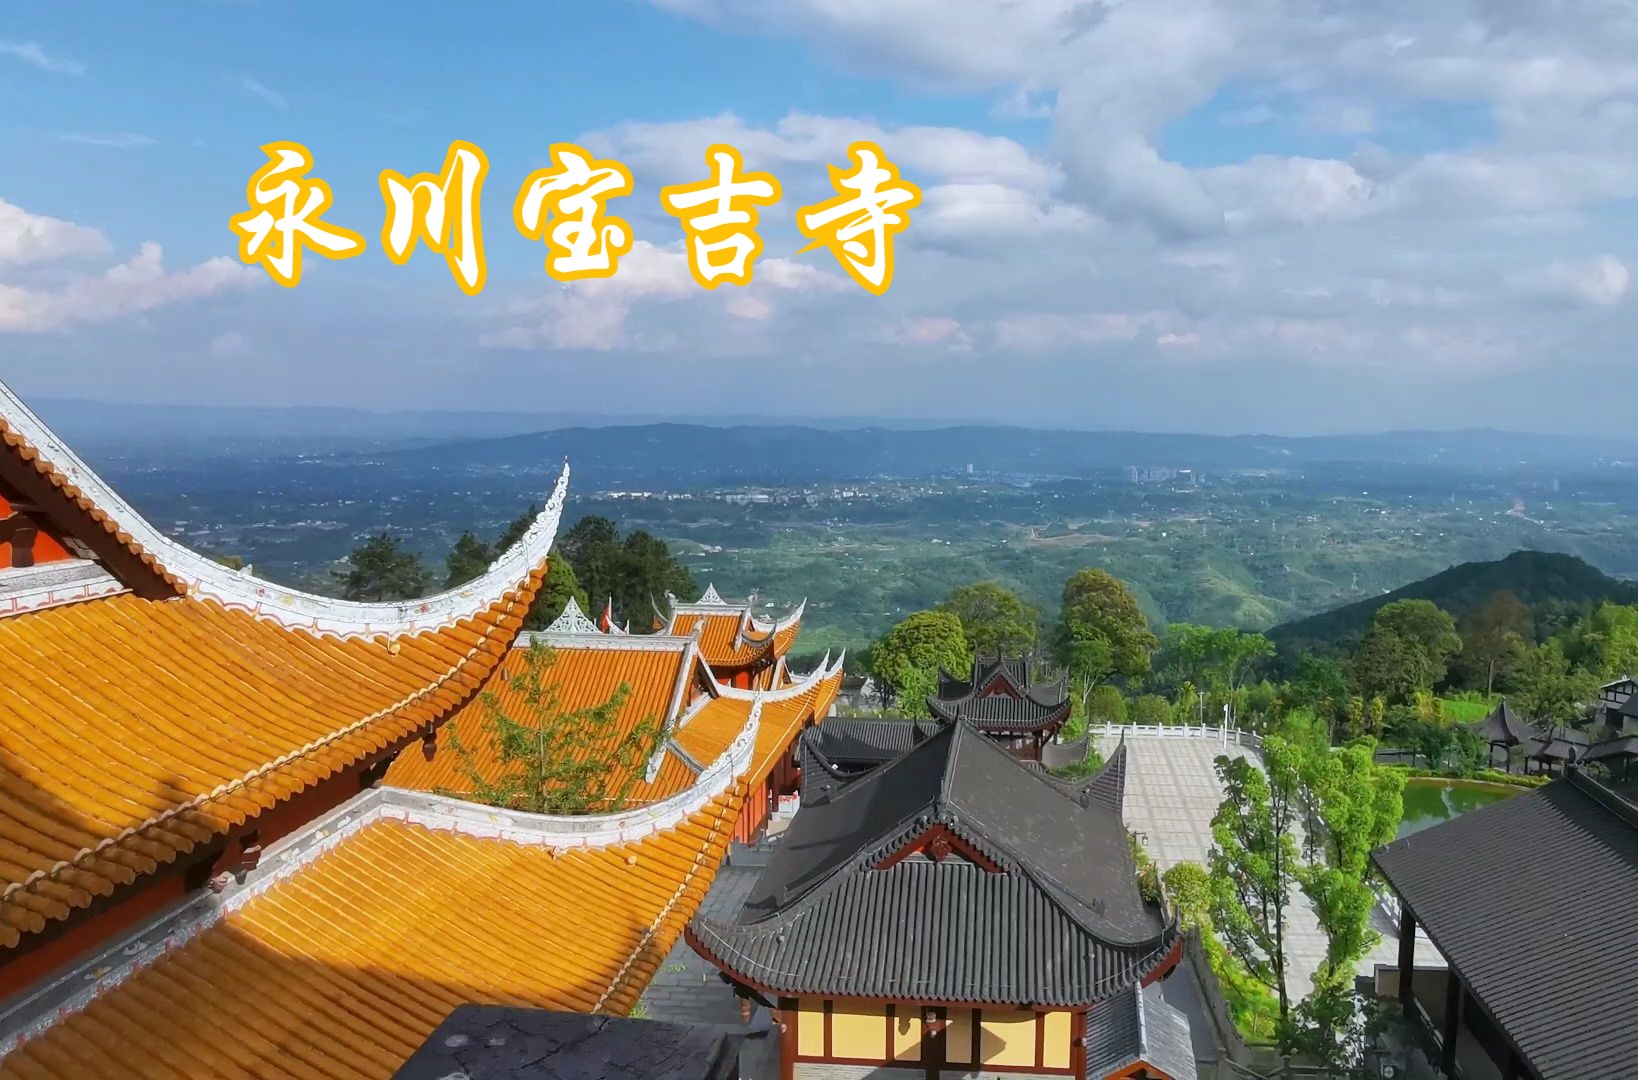 重庆永川宝吉寺座落在风景秀丽的茶山竹海景区内,由原东汉天台寺改建